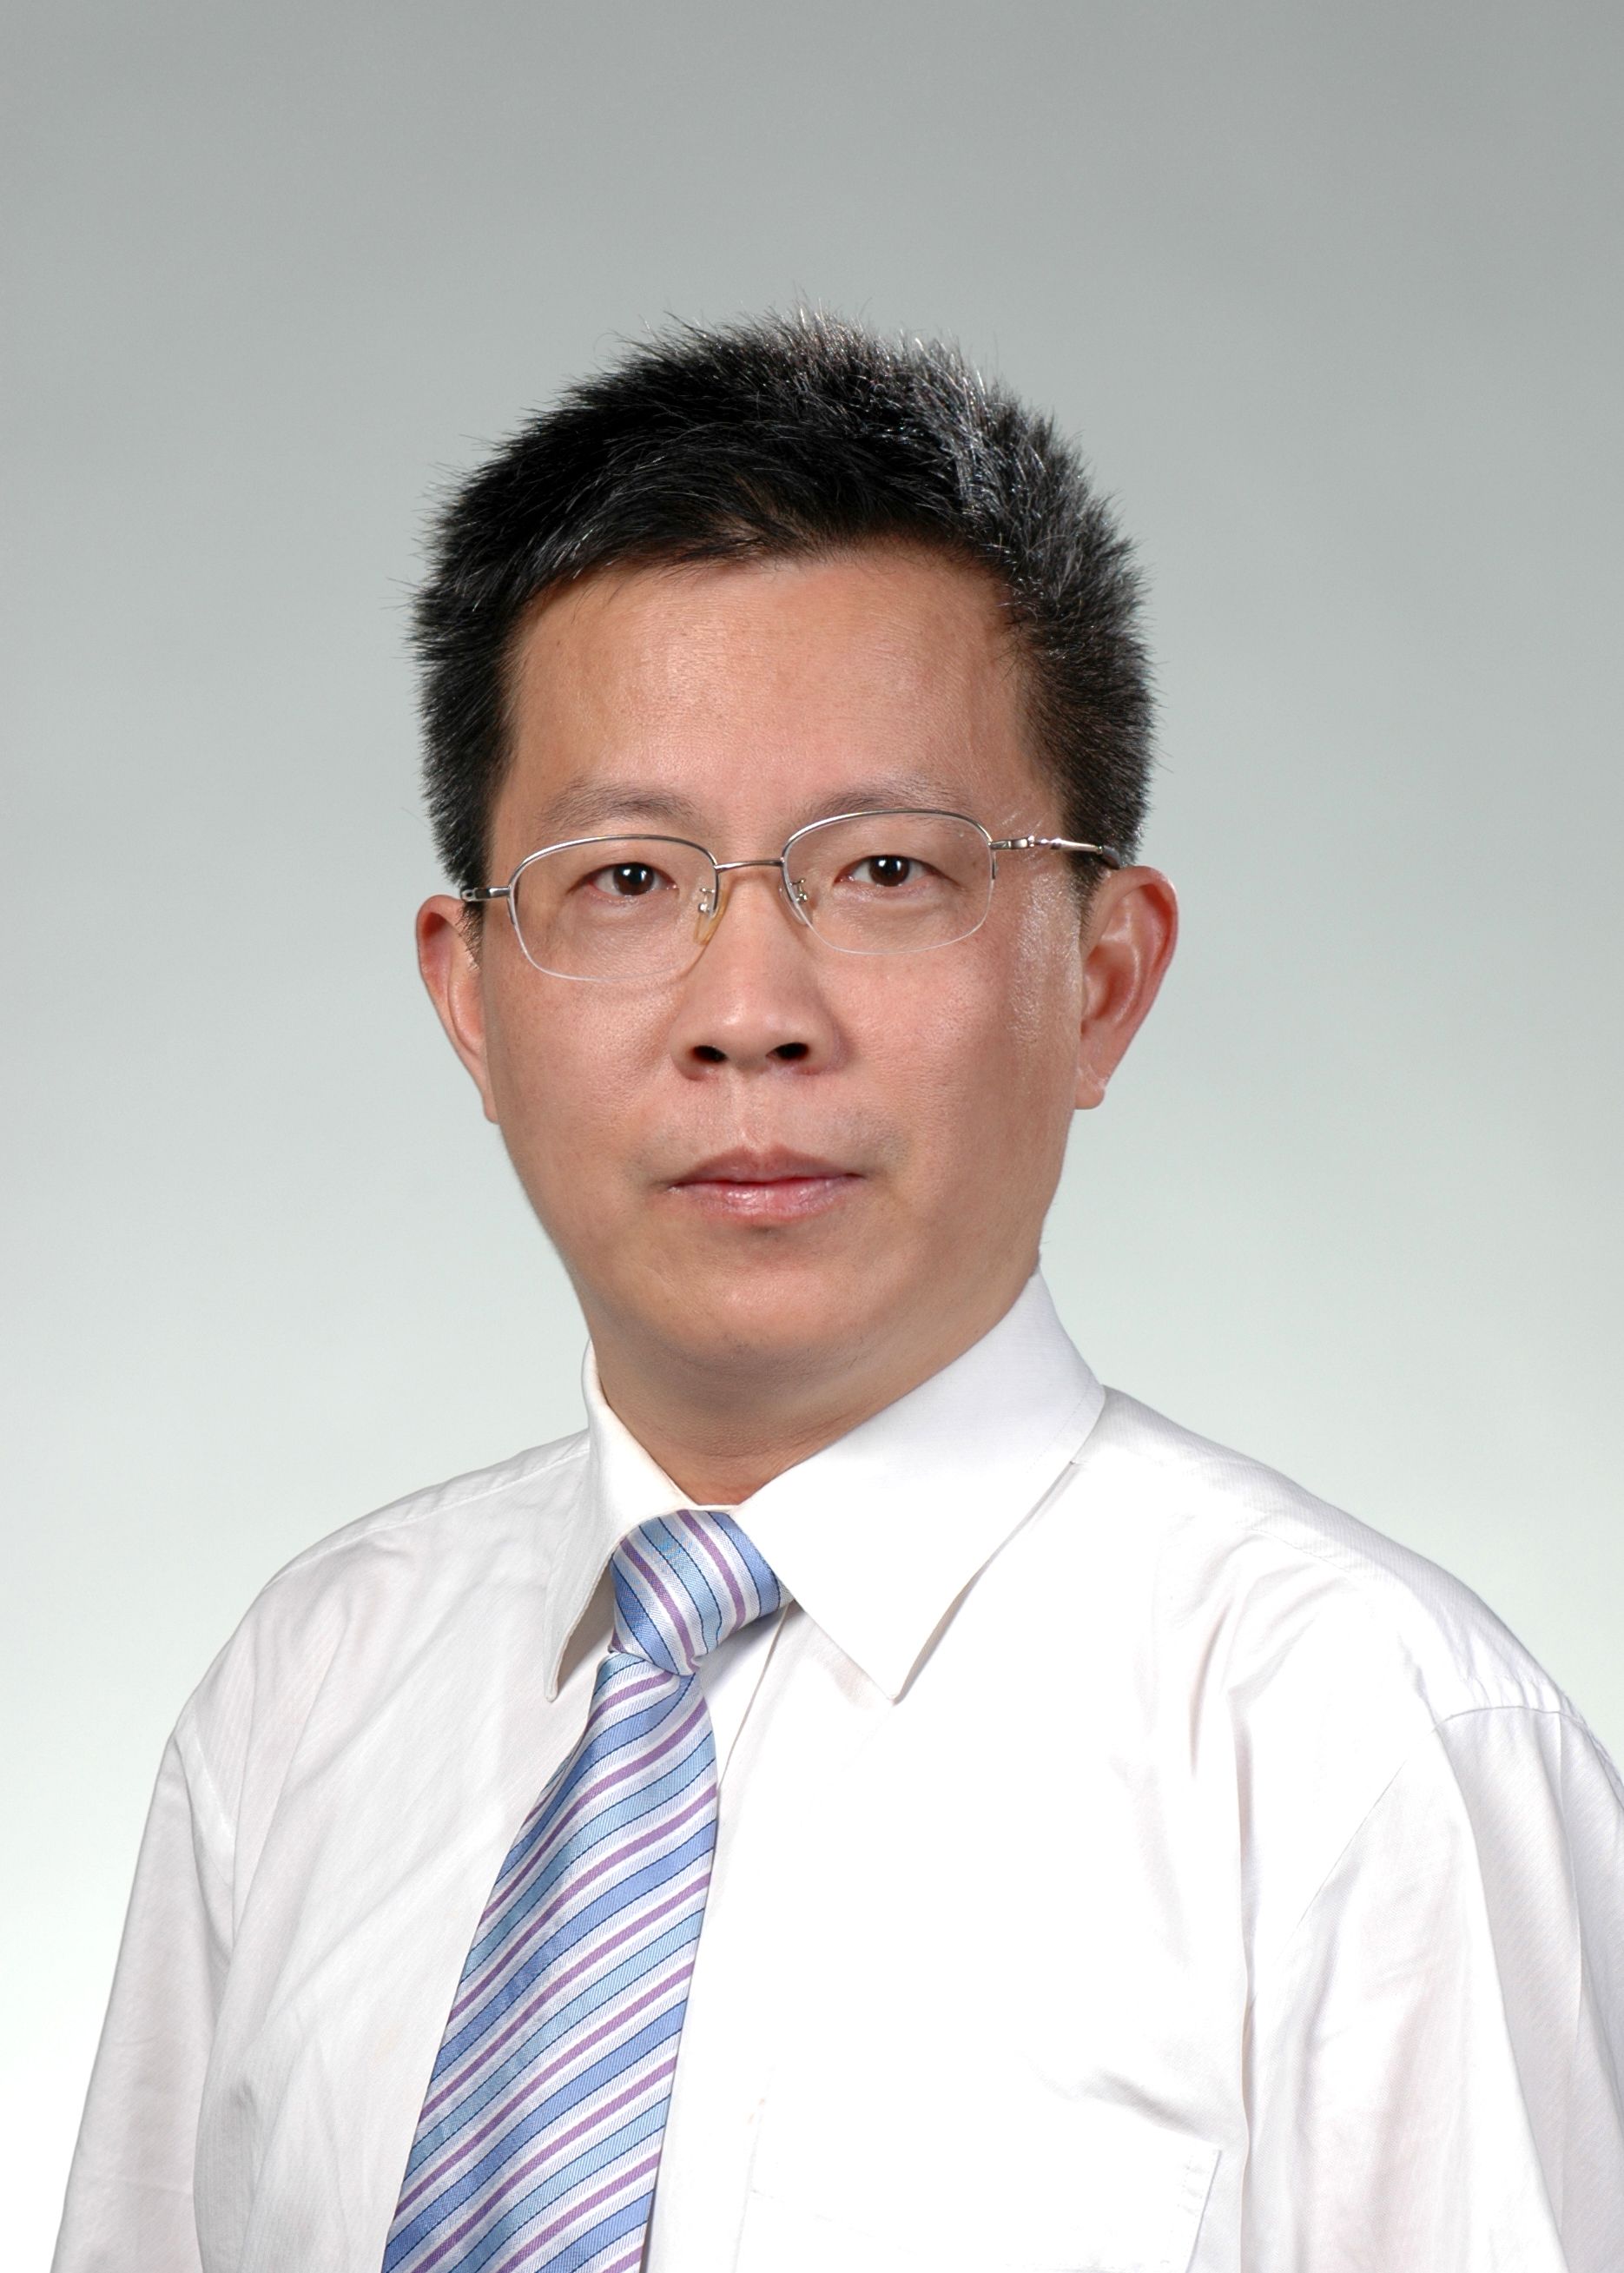 Mr. Yong Zhang